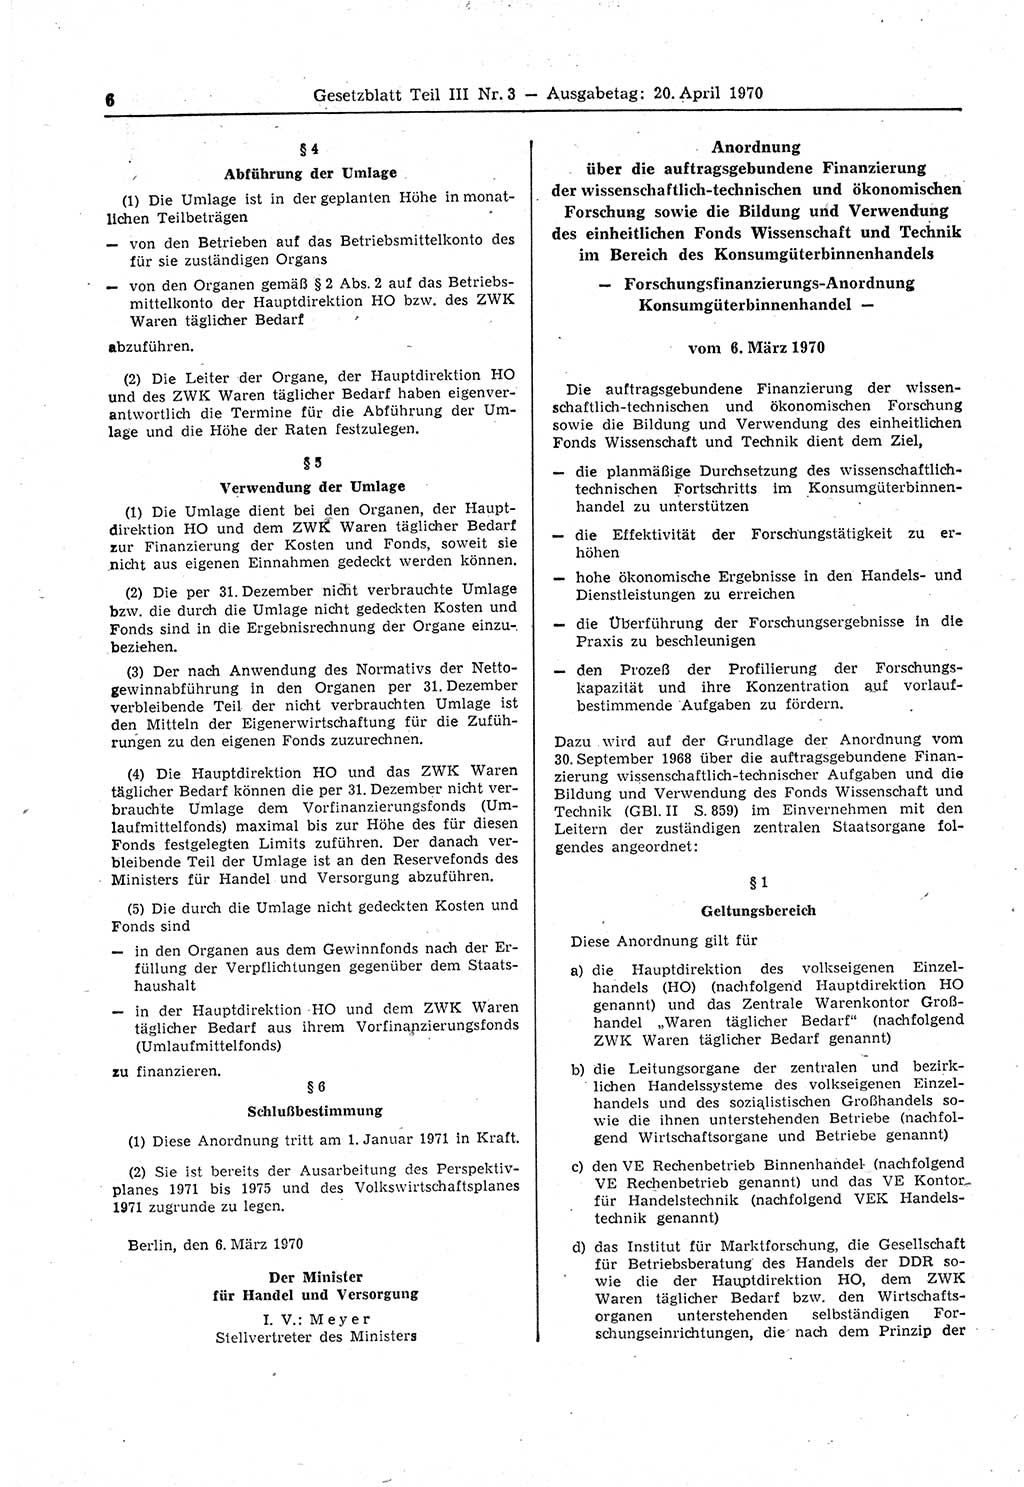 Gesetzblatt (GBl.) der Deutschen Demokratischen Republik (DDR) Teil ⅠⅠⅠ 1970, Seite 6 (GBl. DDR ⅠⅠⅠ 1970, S. 6)